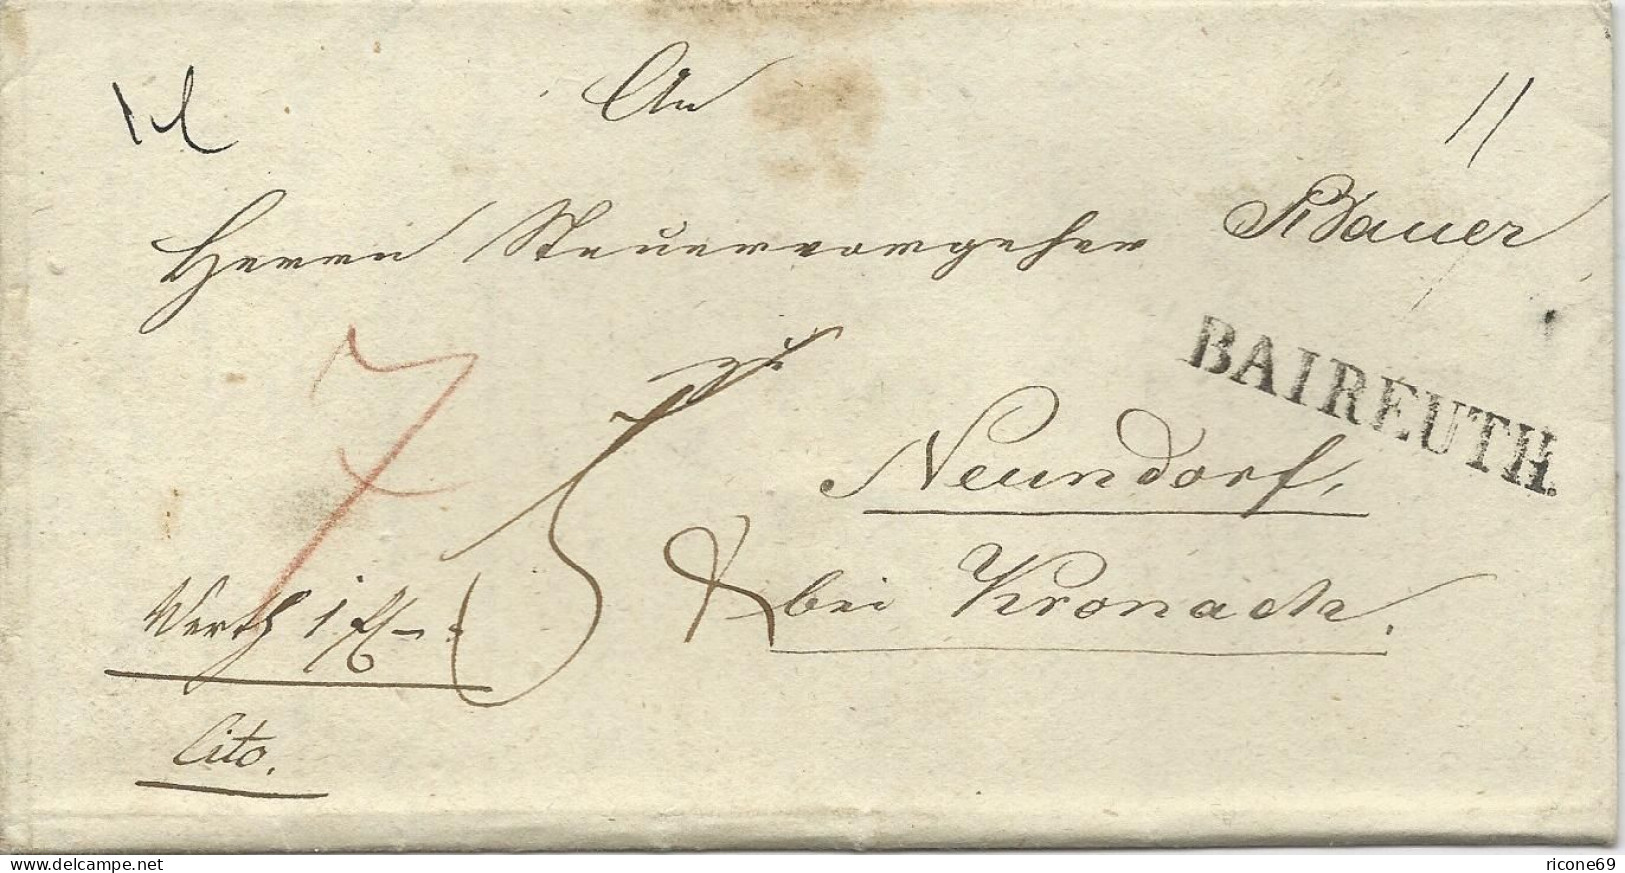 Bayern 1844, L1 Bayreuth Auf Wert Brief M Extra Botenlohn N. Neundorf. #1495 - Storia Postale